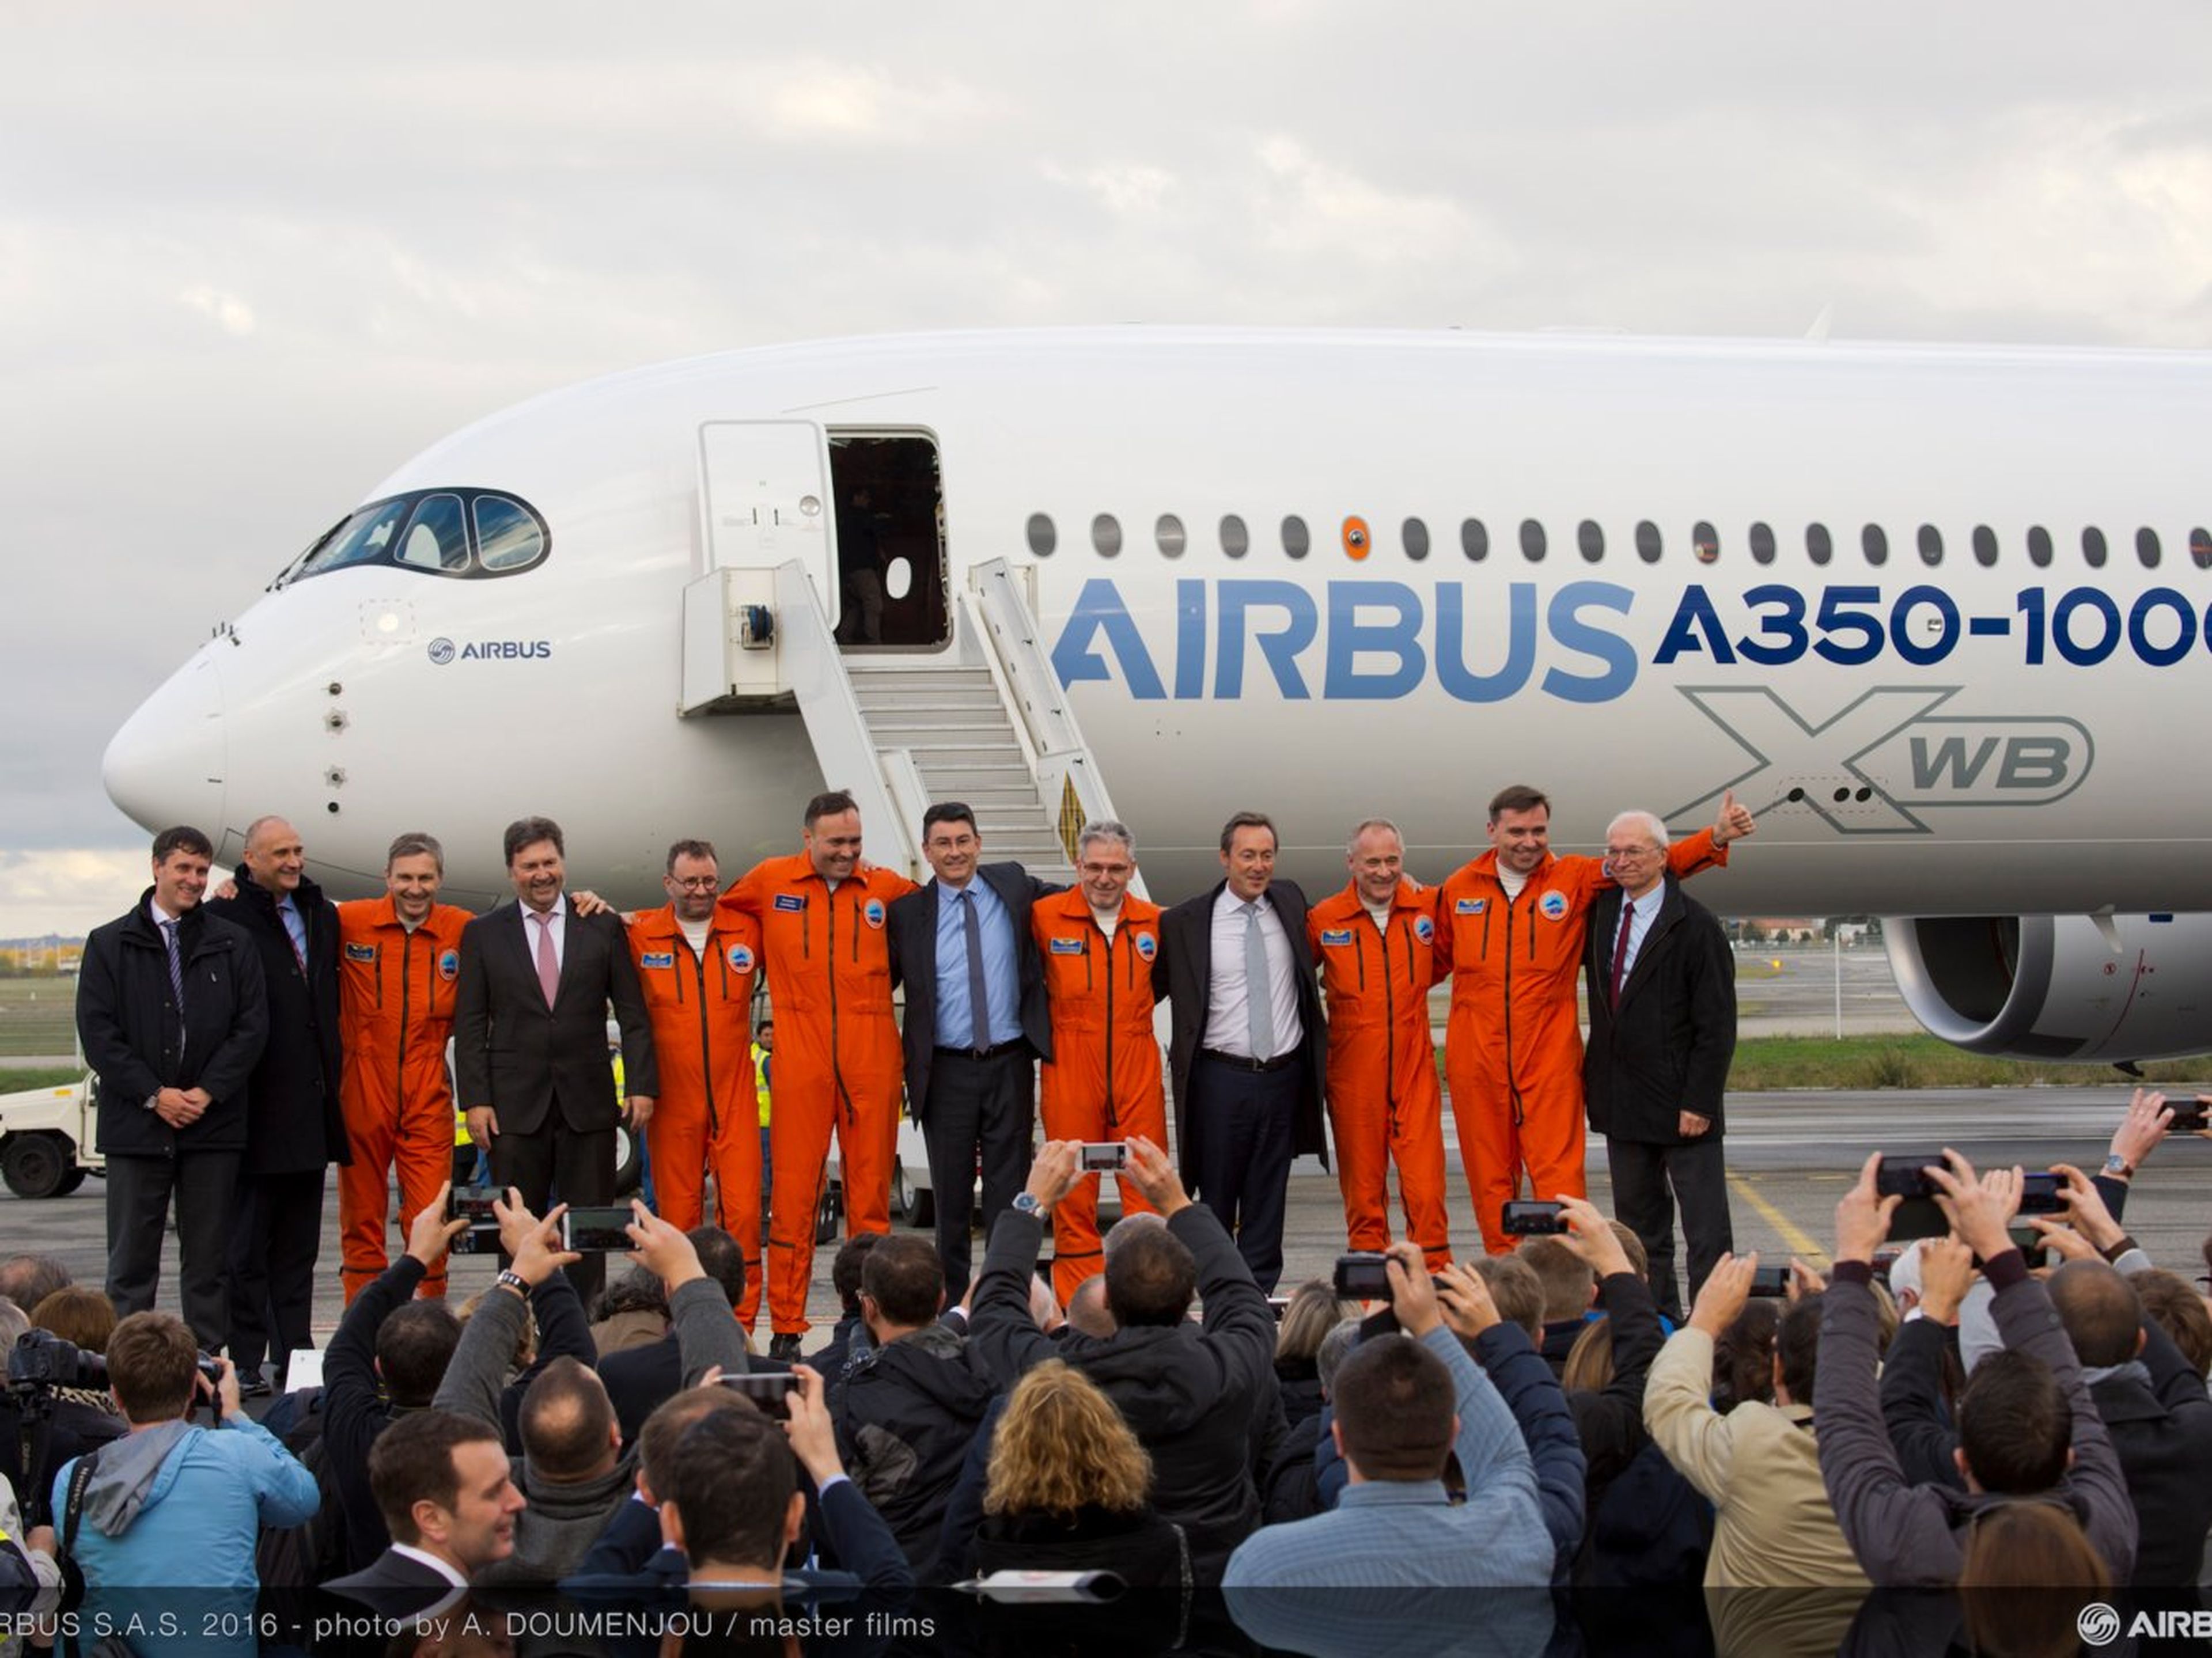 Equipo de Airbus delante del Airbus A350